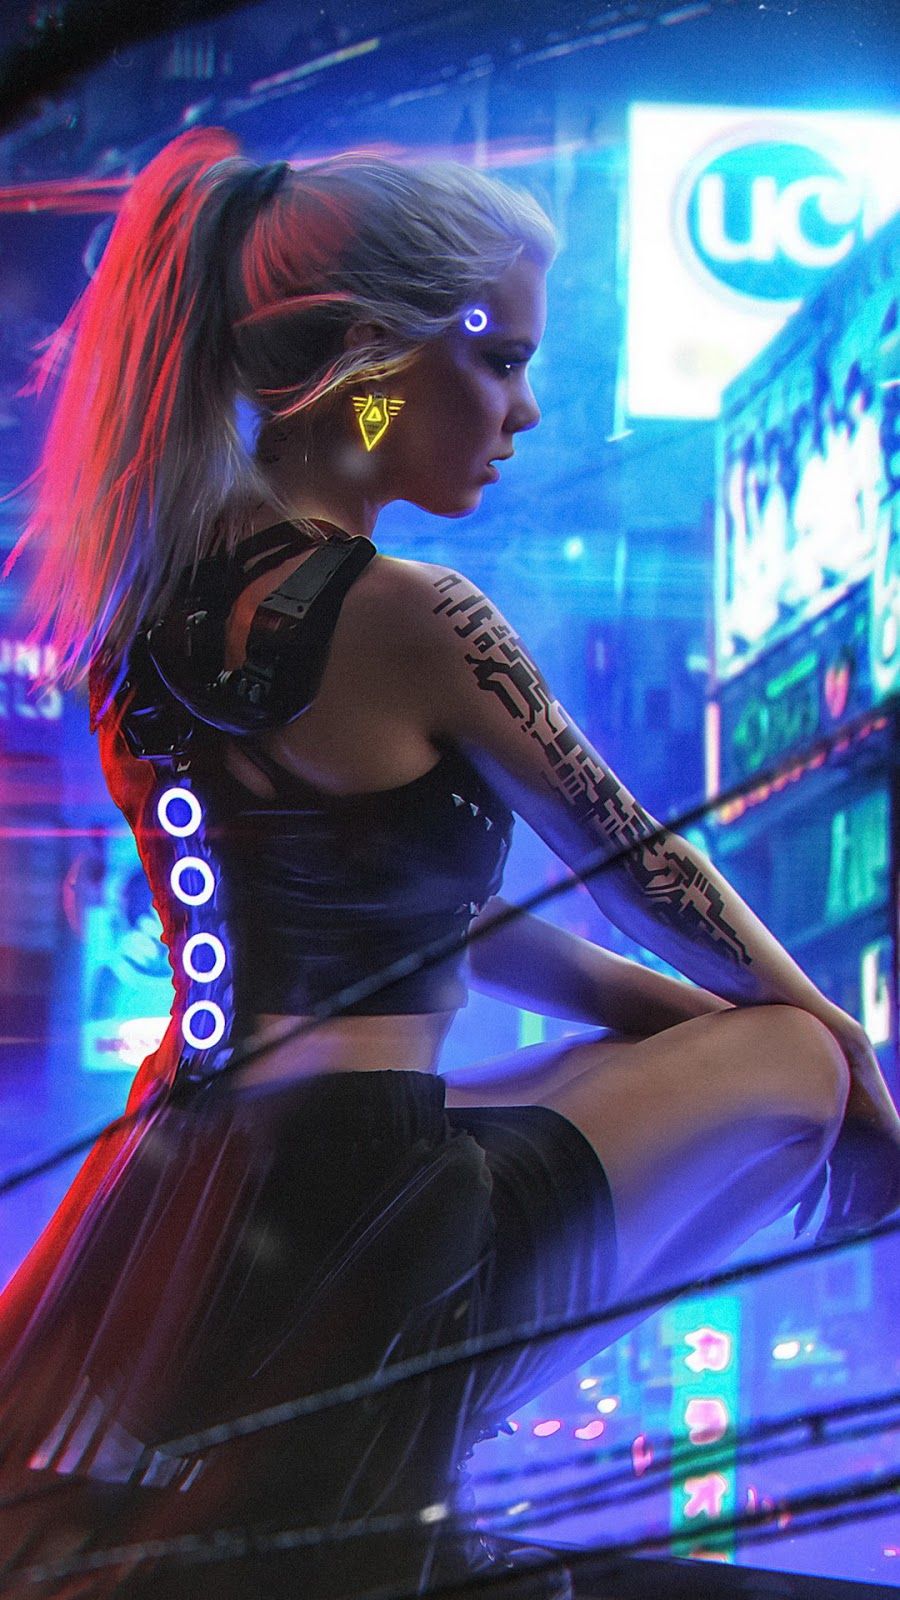 Cyberpunk 2077 4k Wallpaper Cyberpunk 2077 Female Games Xbox 4k